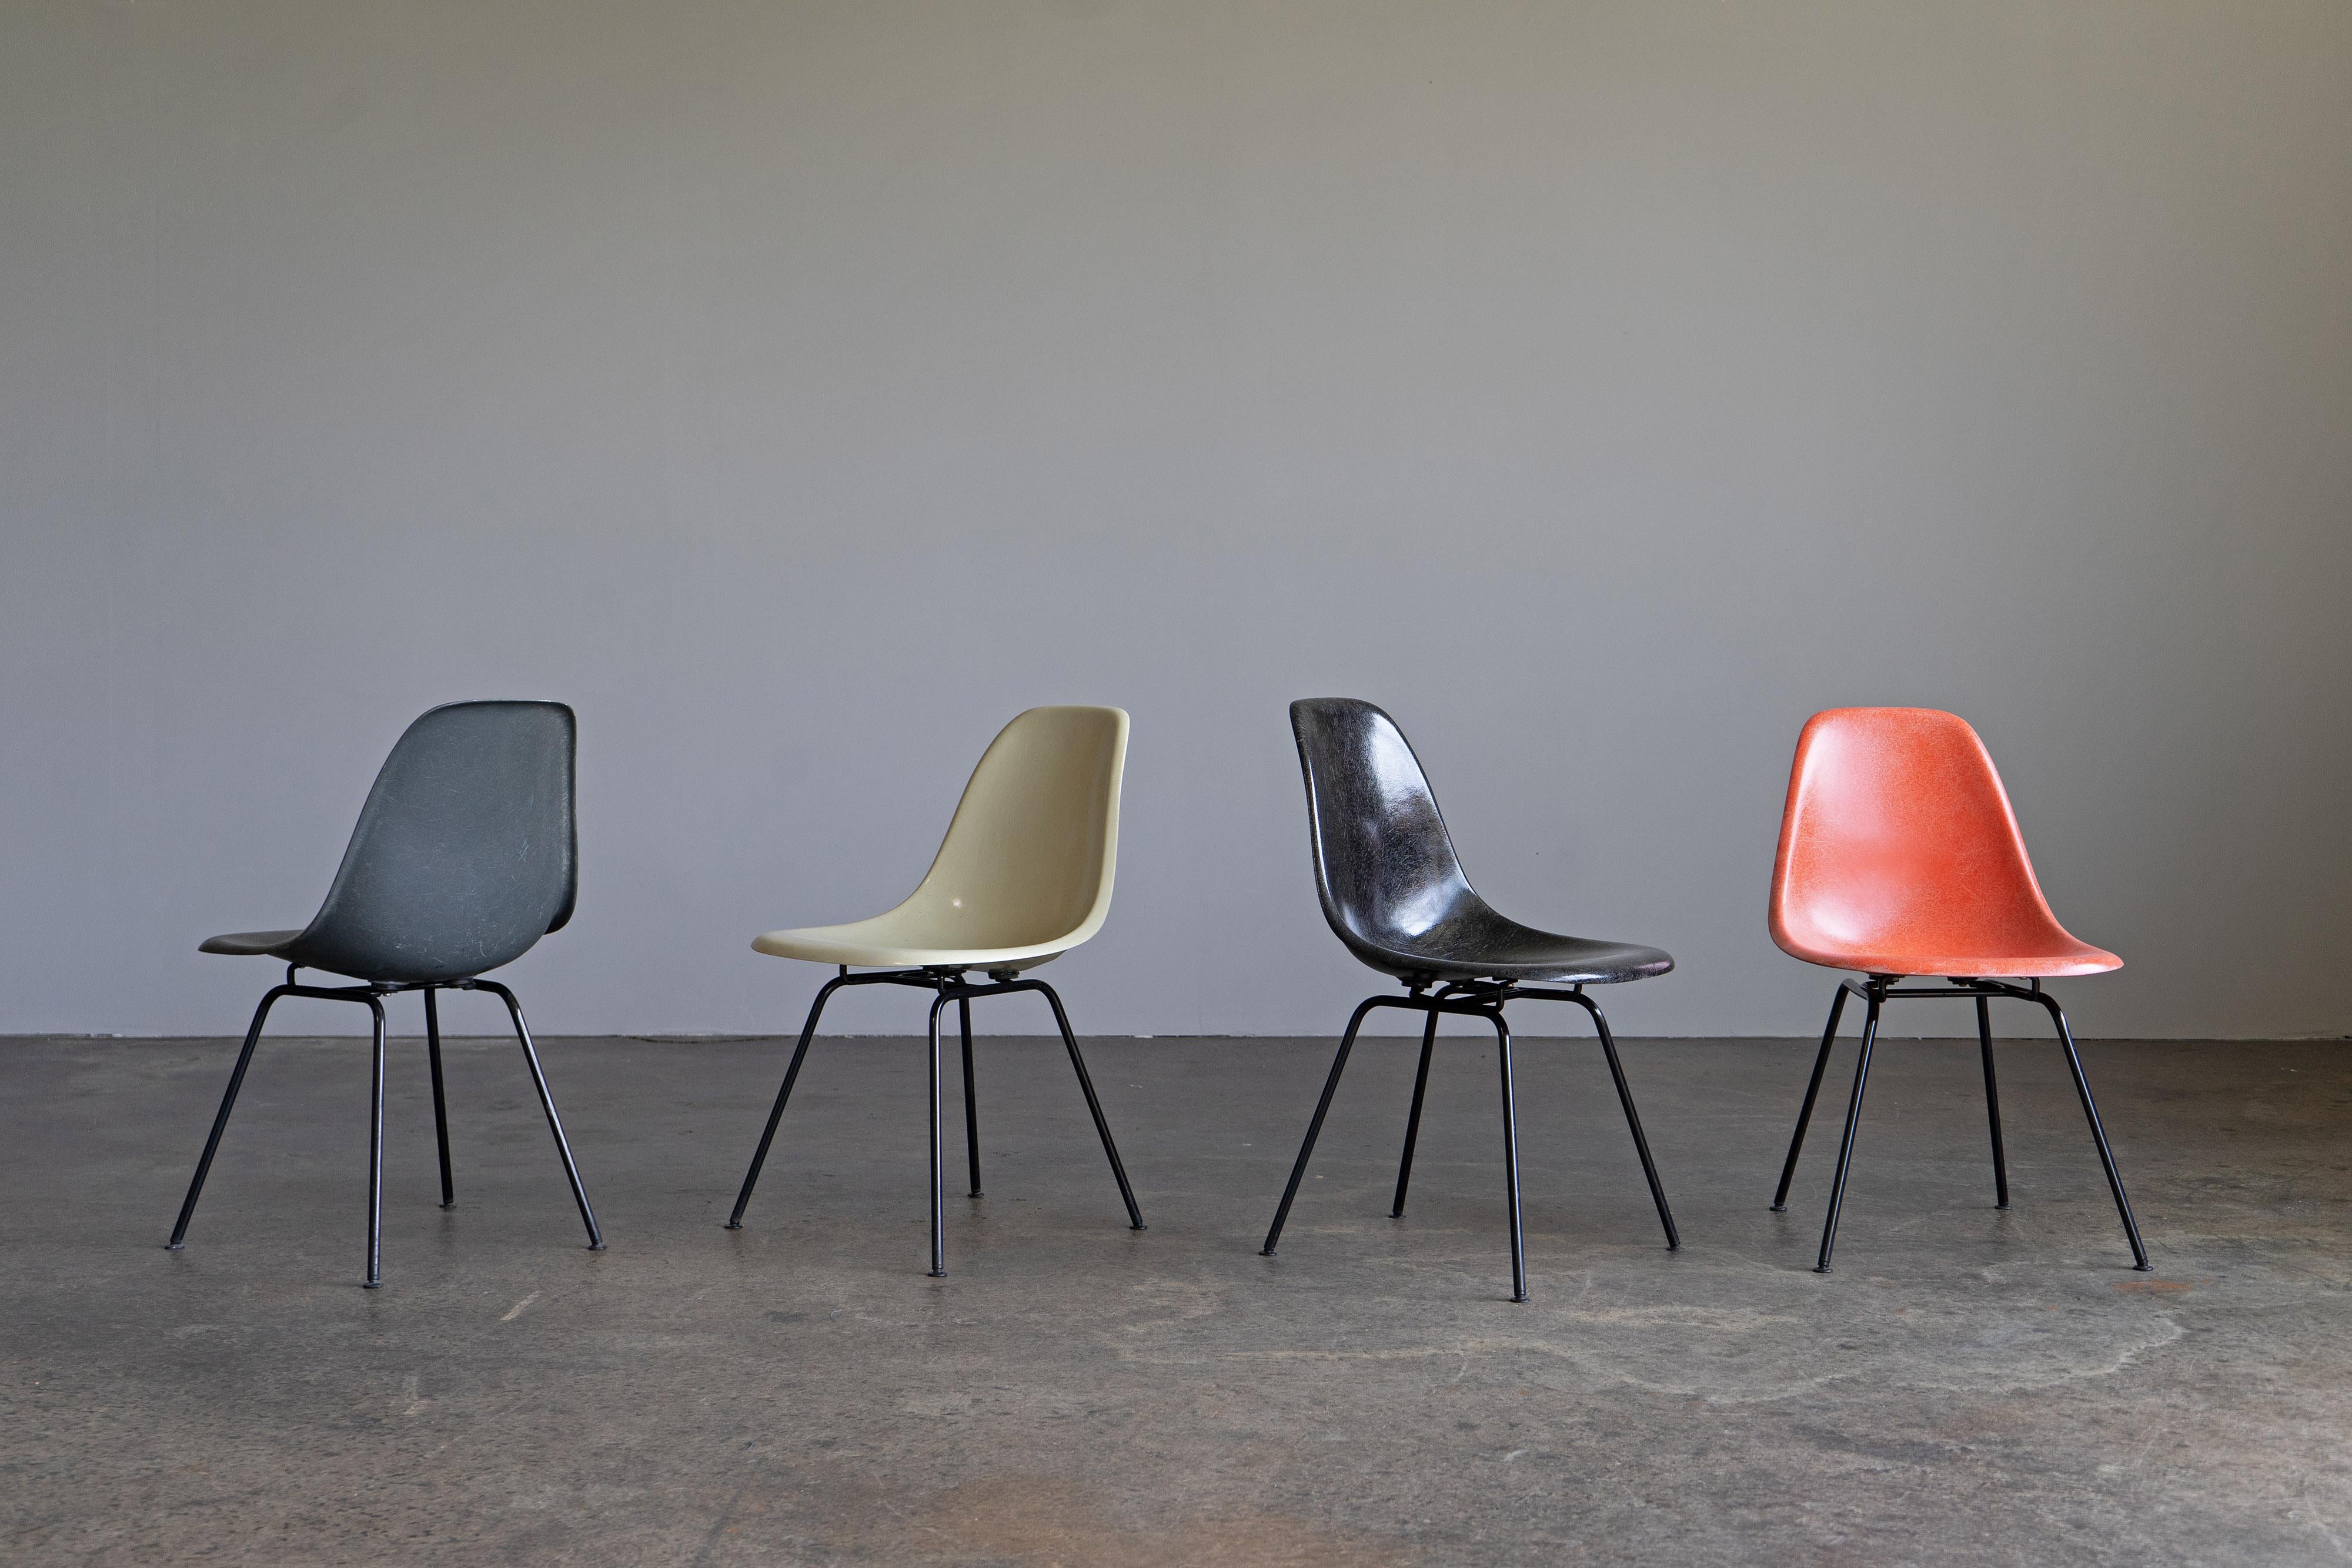 Satz von vier mehrfarbigen Beistellstühlen von Charles und Ray Eames. Die Stühle wurden in den 1960er Jahren von Herman Miller/Vitra hergestellt und weisen eine schöne Fiberglasstruktur auf. Die Granaten sind auf H-Sockeln montiert.